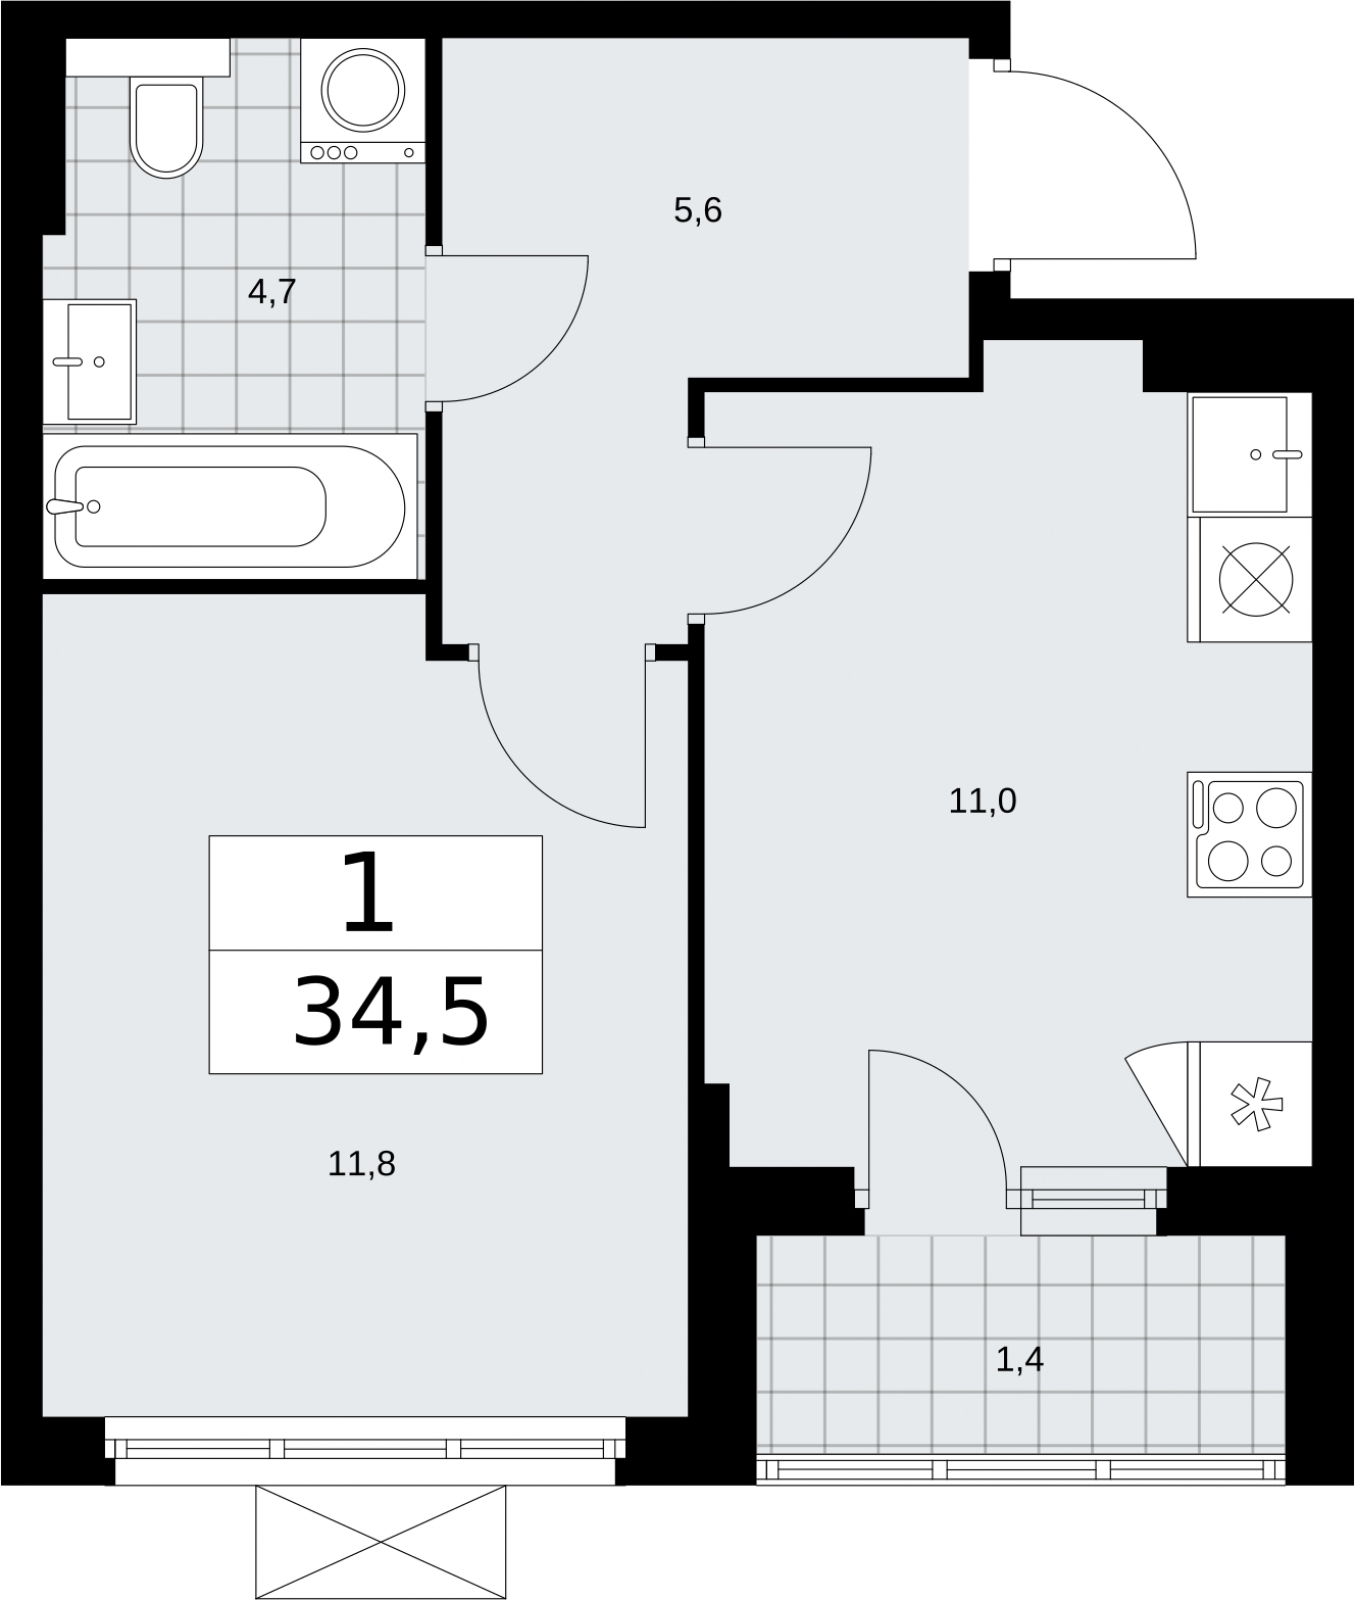 Продается просторная 1-комн. квартира с отделкой в новом жилом комплексе, метро рядом